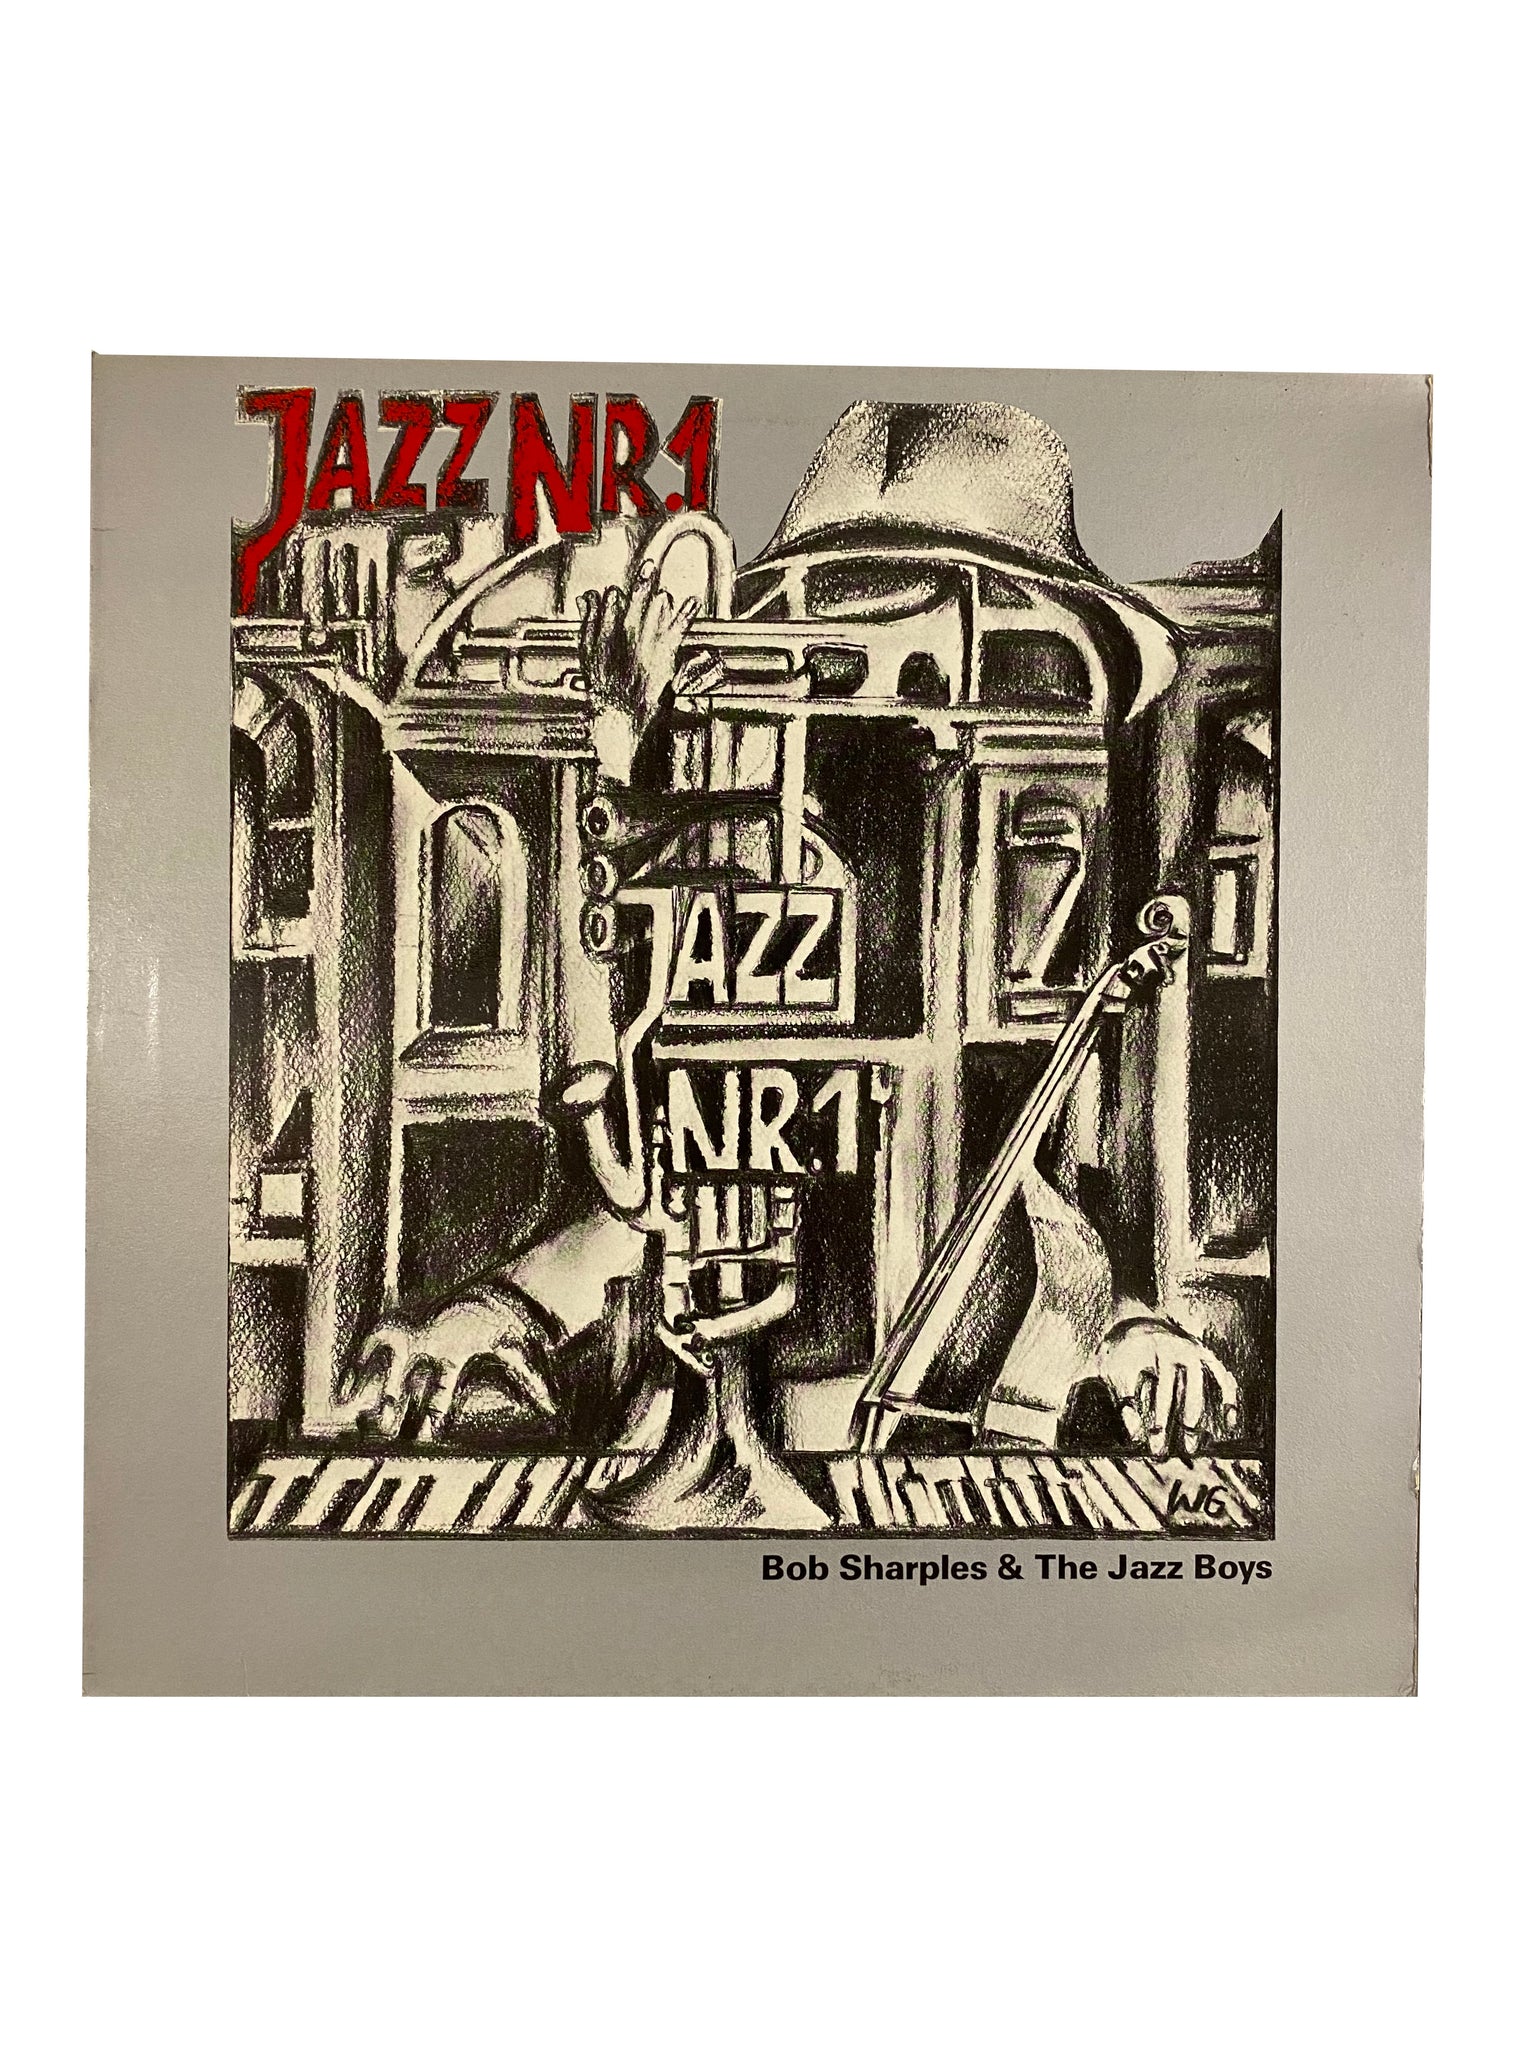 Jazz Nr.1(LP), by Bob Sharples & The Jazz Boys